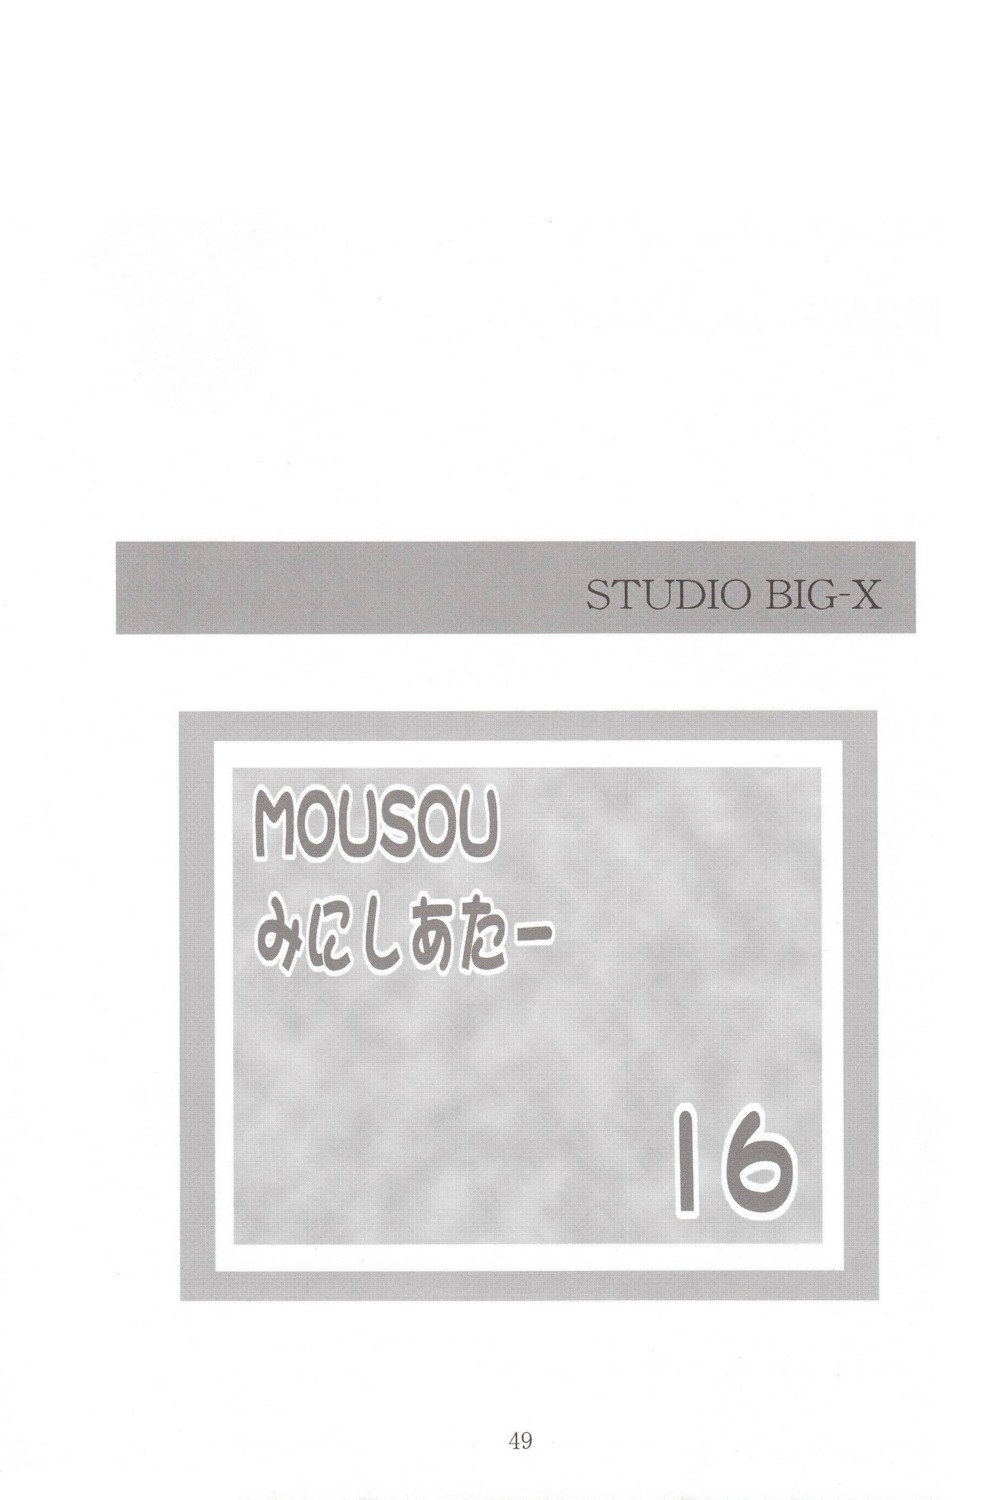 arino_hiroshi studio_big-x text